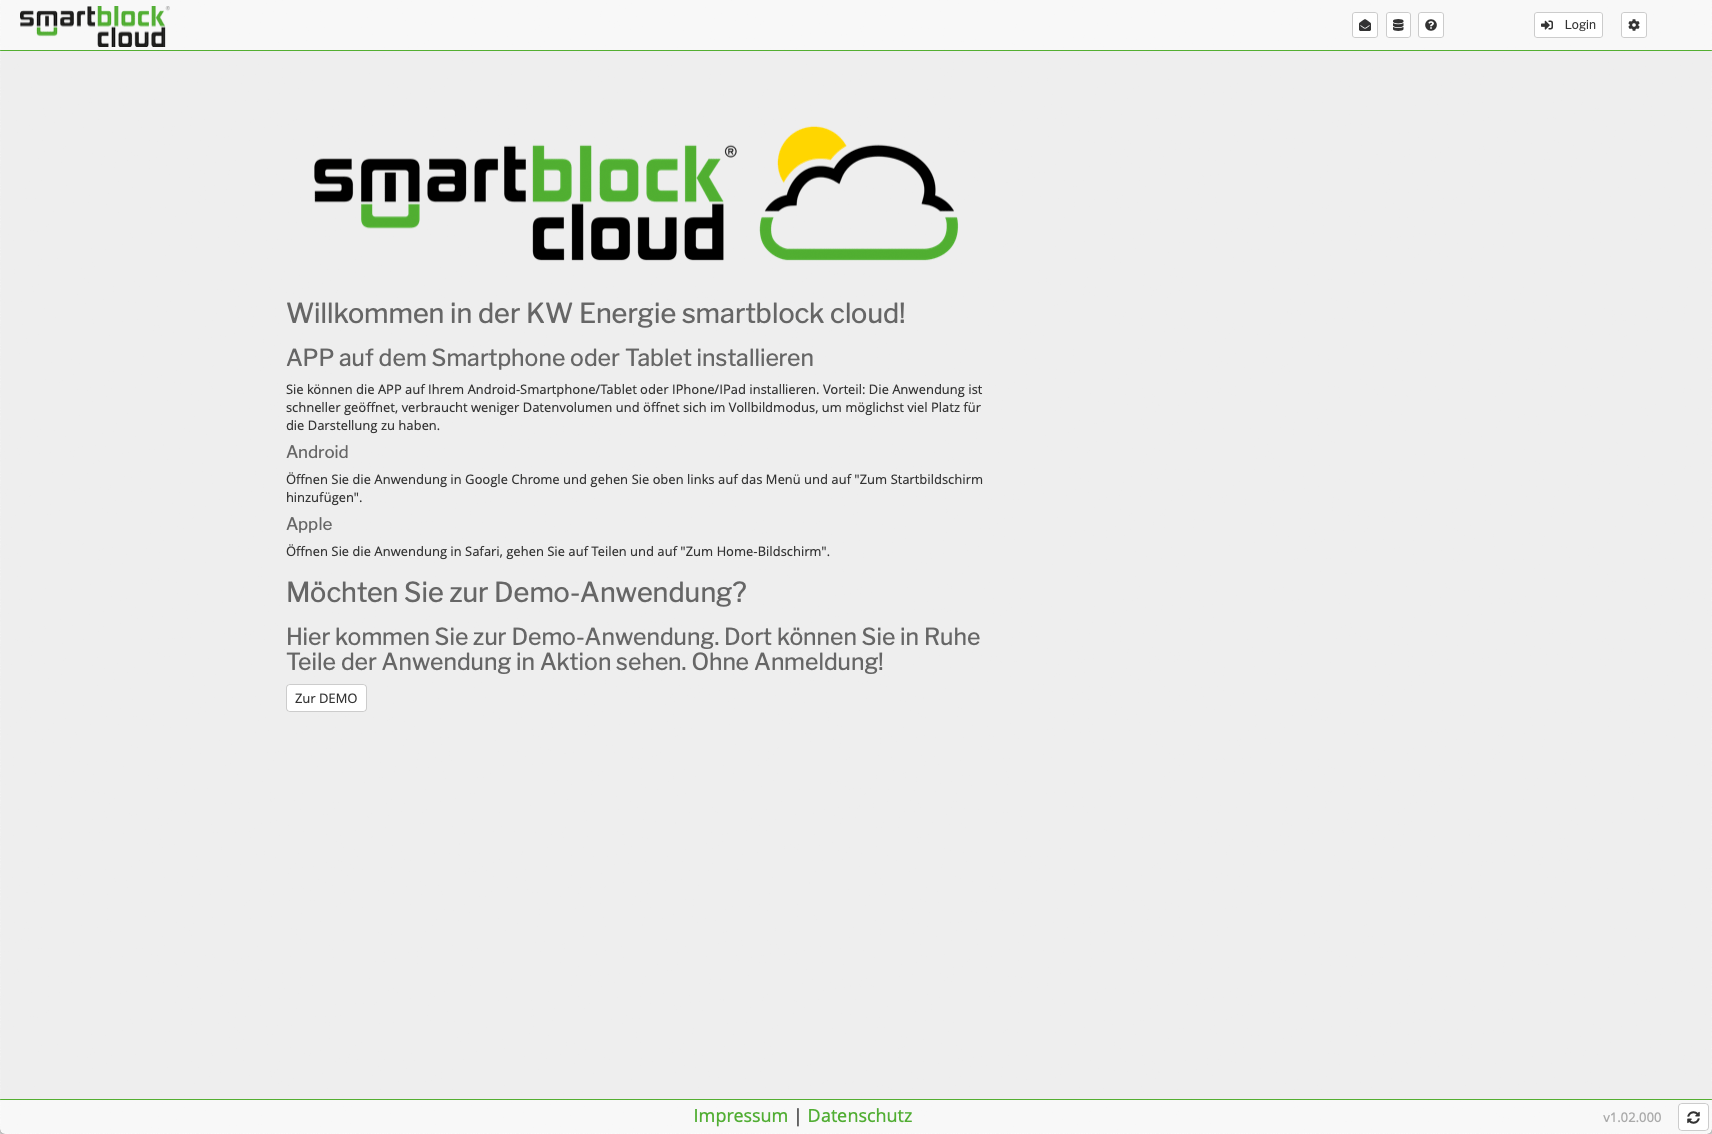 smartblock cloud – a new era in digitalization